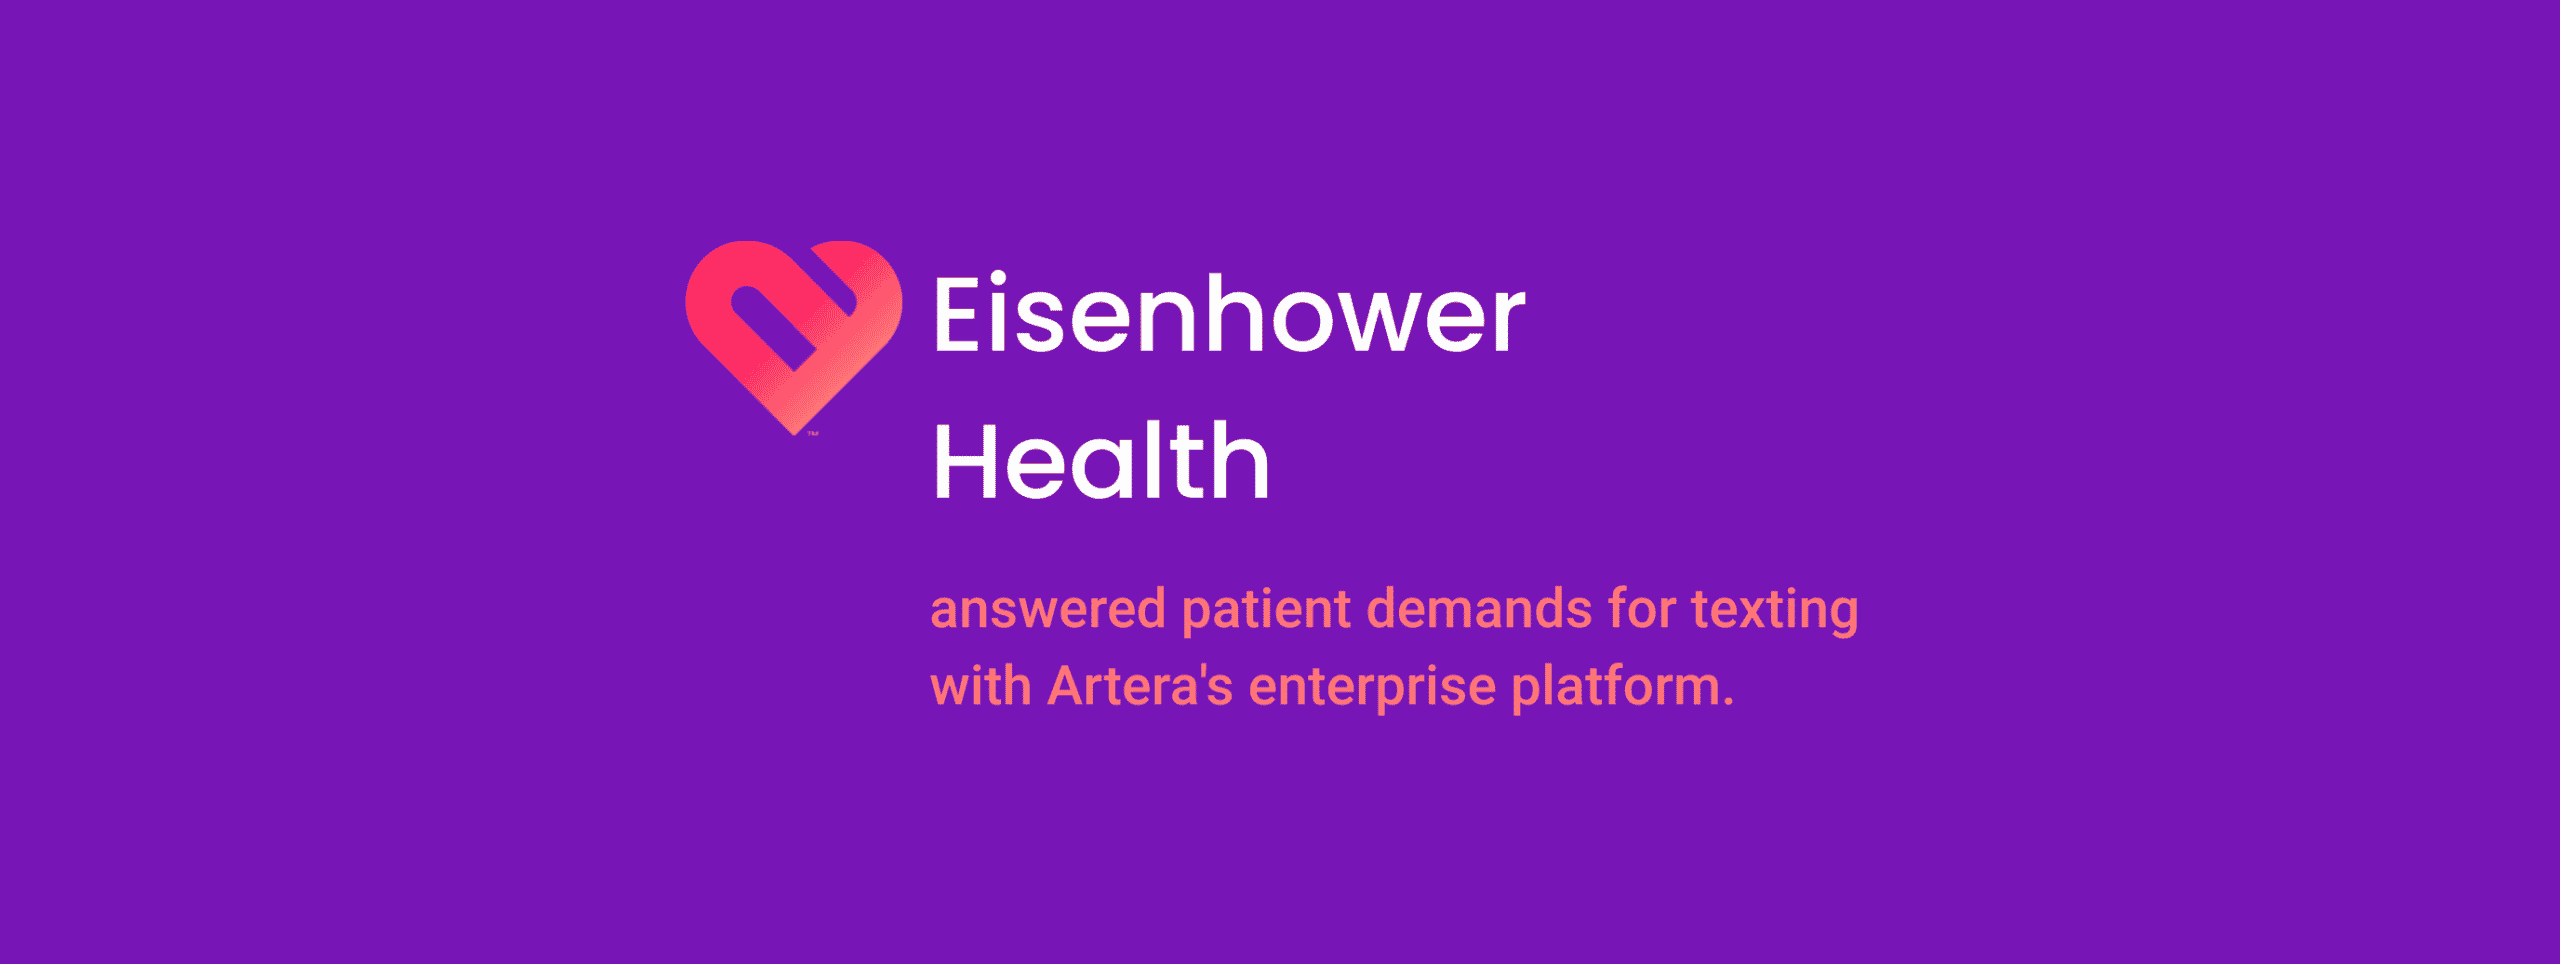 Eisenhower Health header